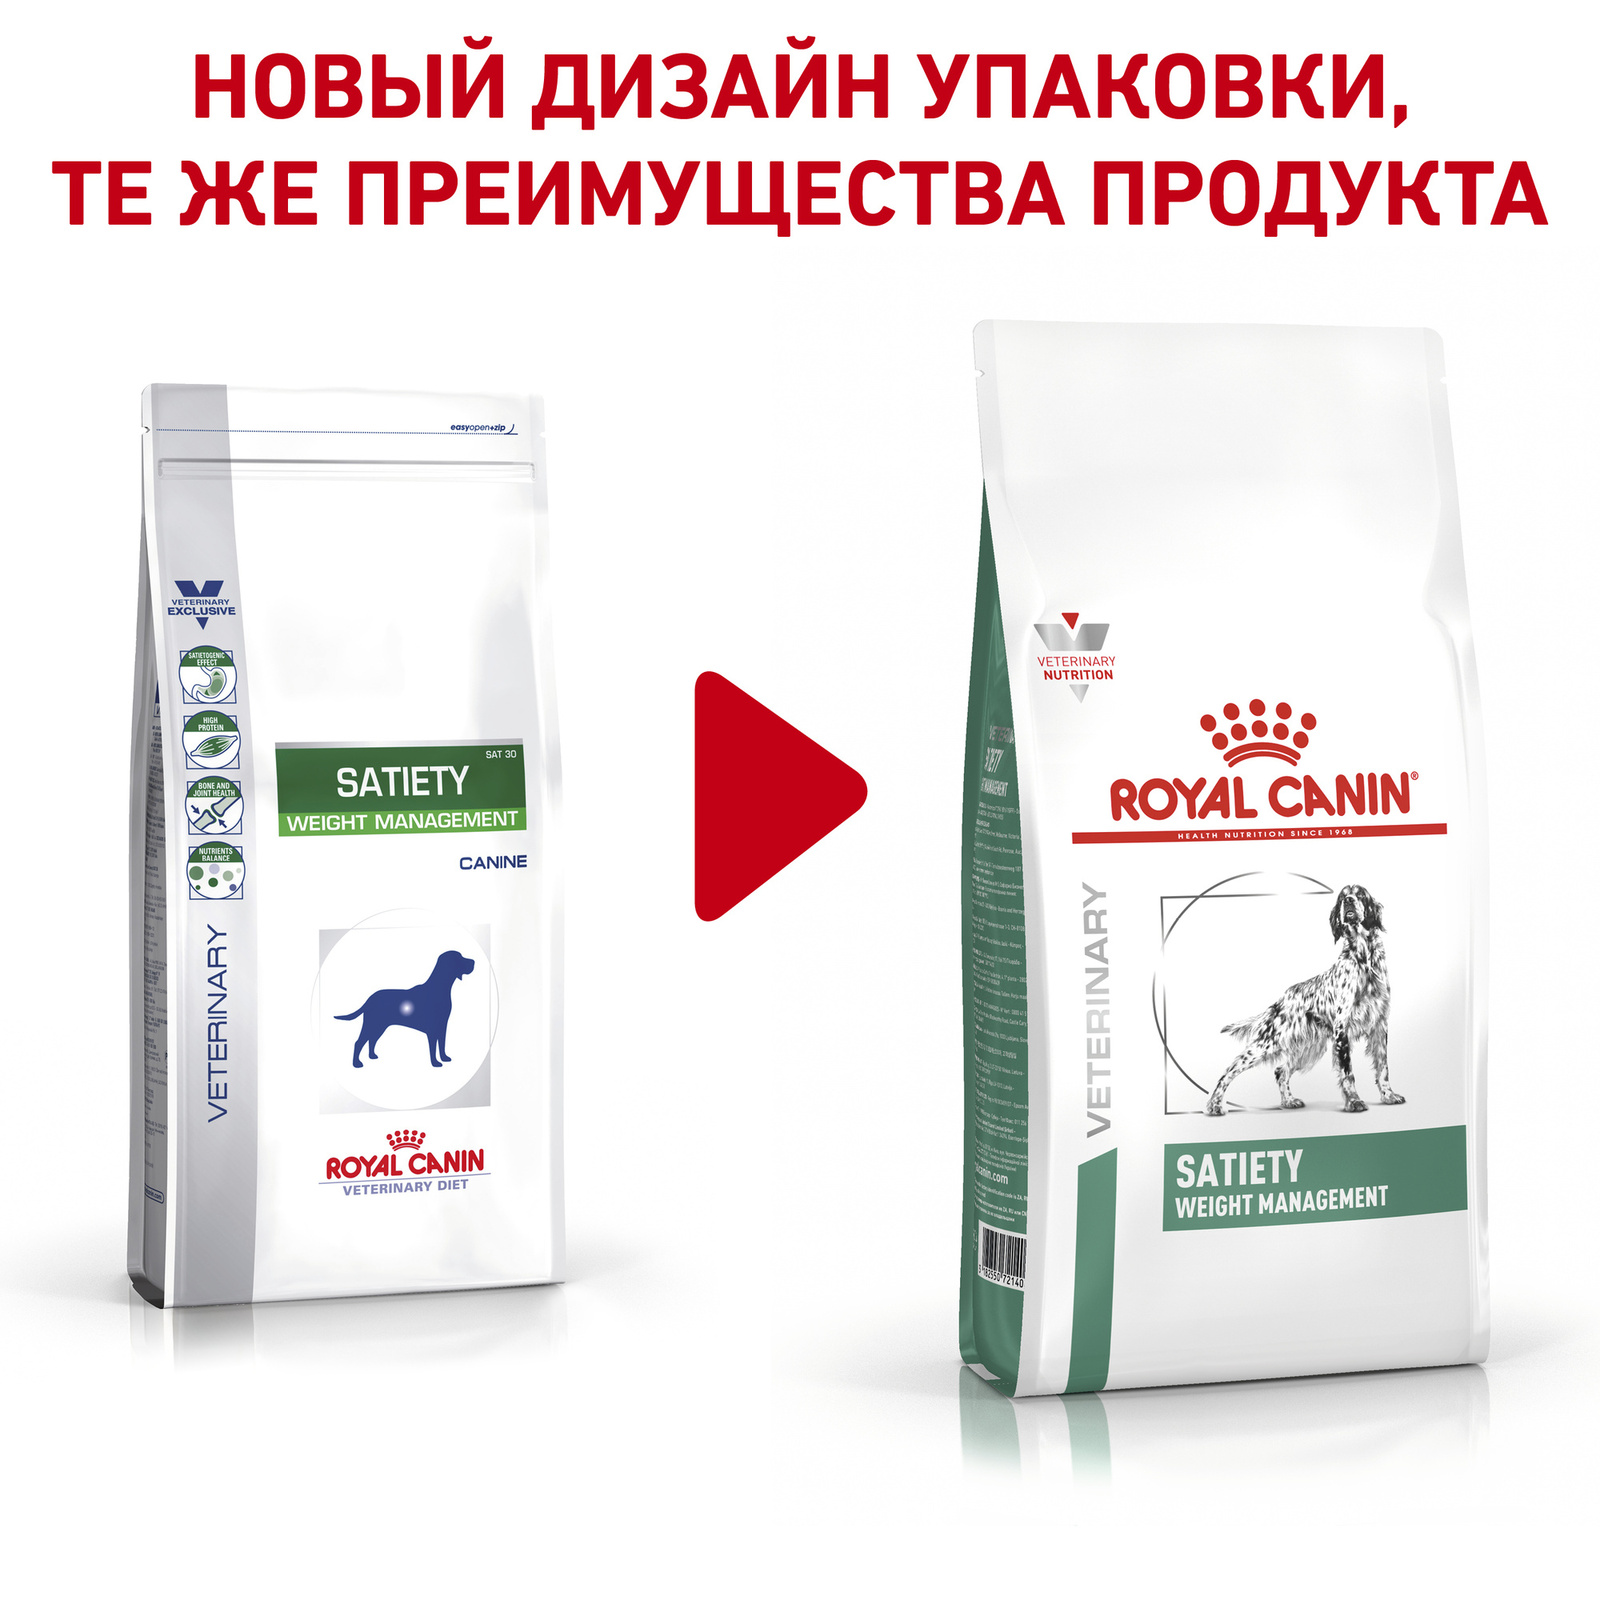 полнорационный диетический, для взрослых собак, рекомендуемый для снижения веса (1,5 кг) Royal Canin (вет.корма) полнорационный диетический, для взрослых собак, рекомендуемый для снижения веса (1,5 кг) - фото 2